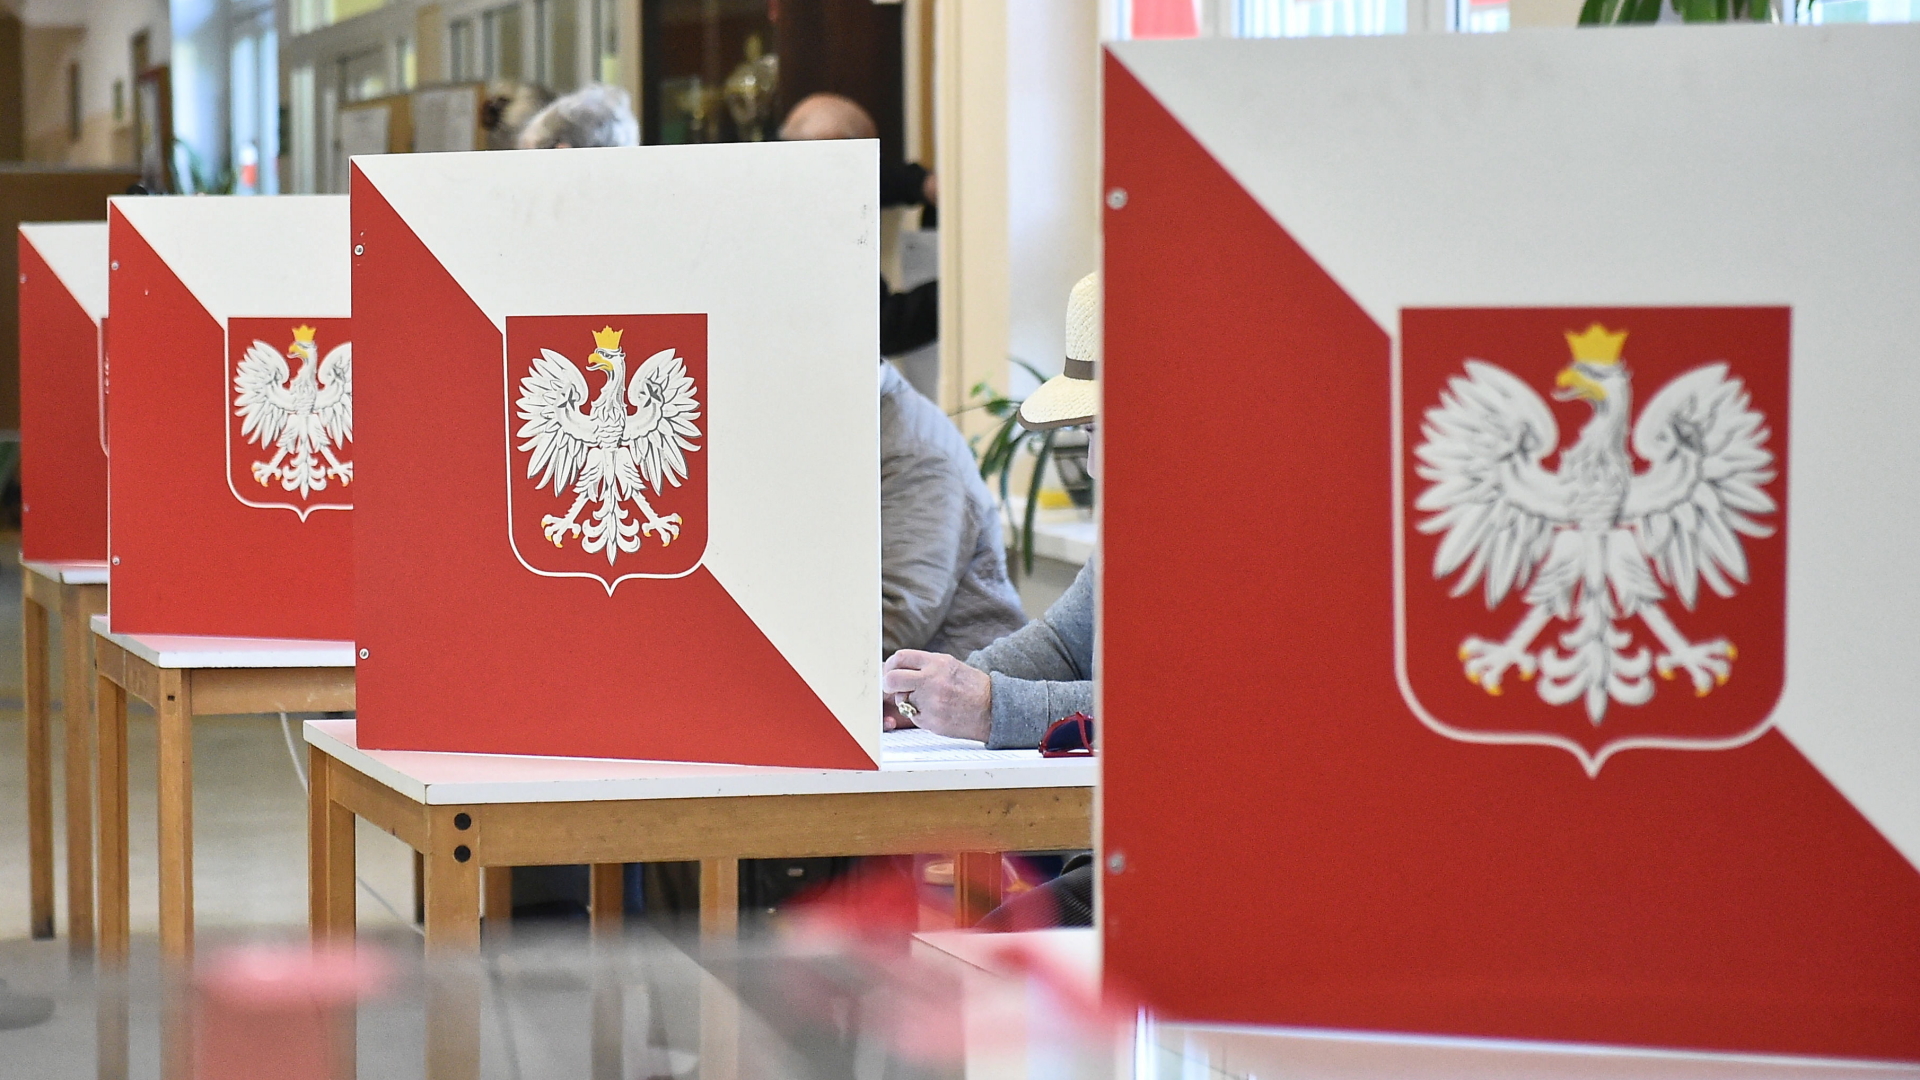 Menschen stimmen in Polen hinter Aufstellern in rot-weiß bei der Regionalwahl ab. | Bildquelle: MARCIN GADOMSKI/EPA-EFE/REX/Shut